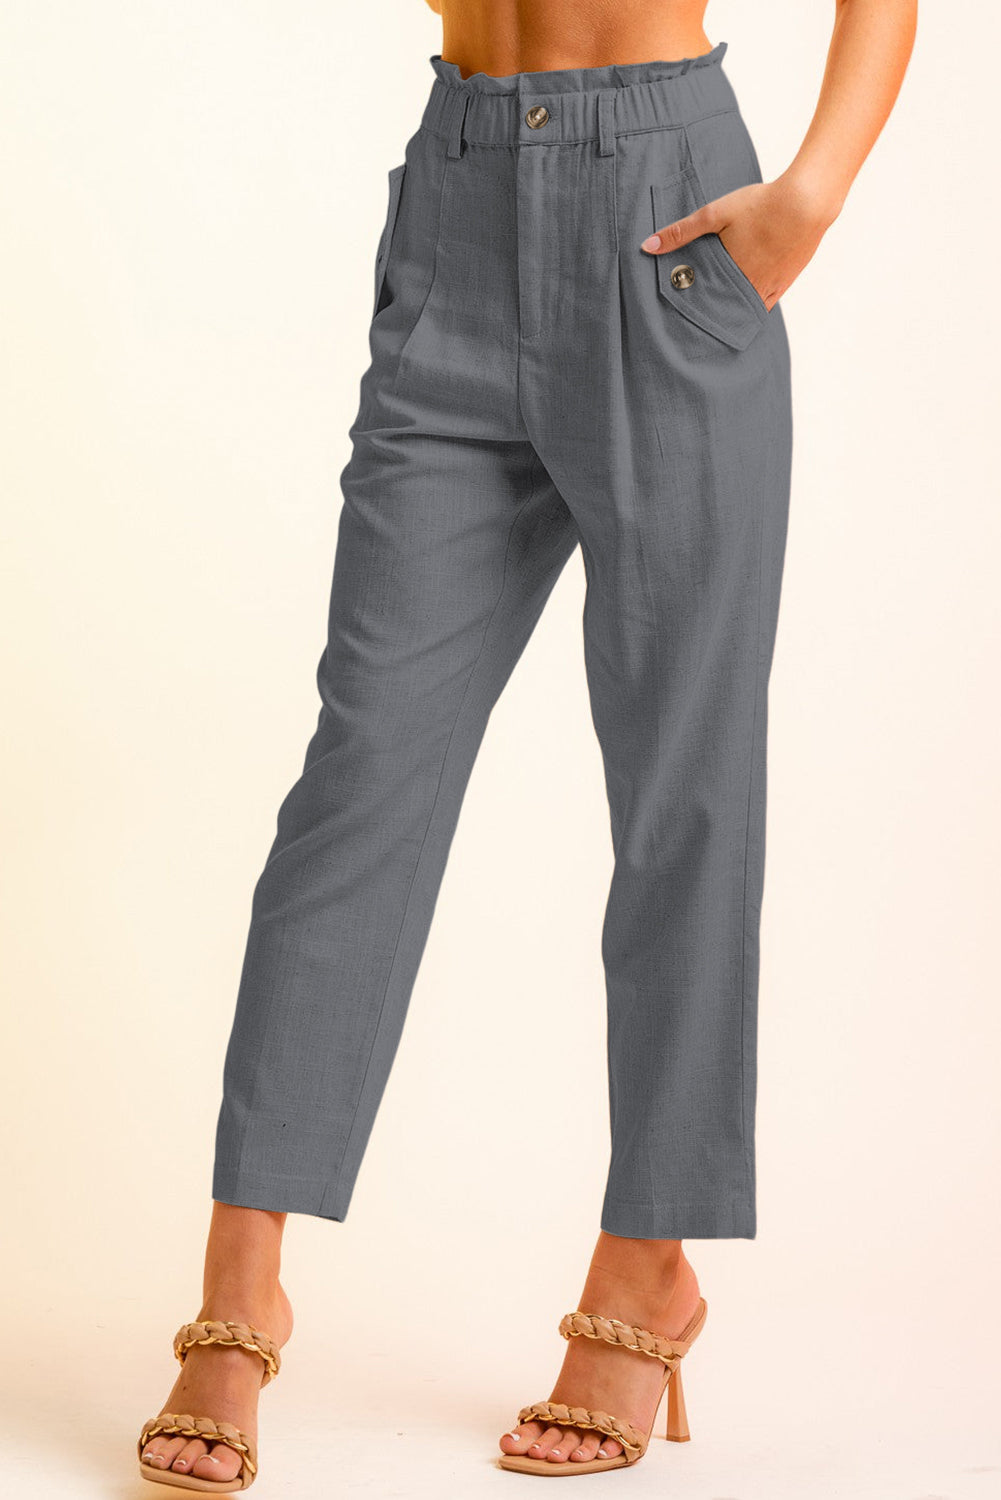 Side Button Long Pants - 6 colors